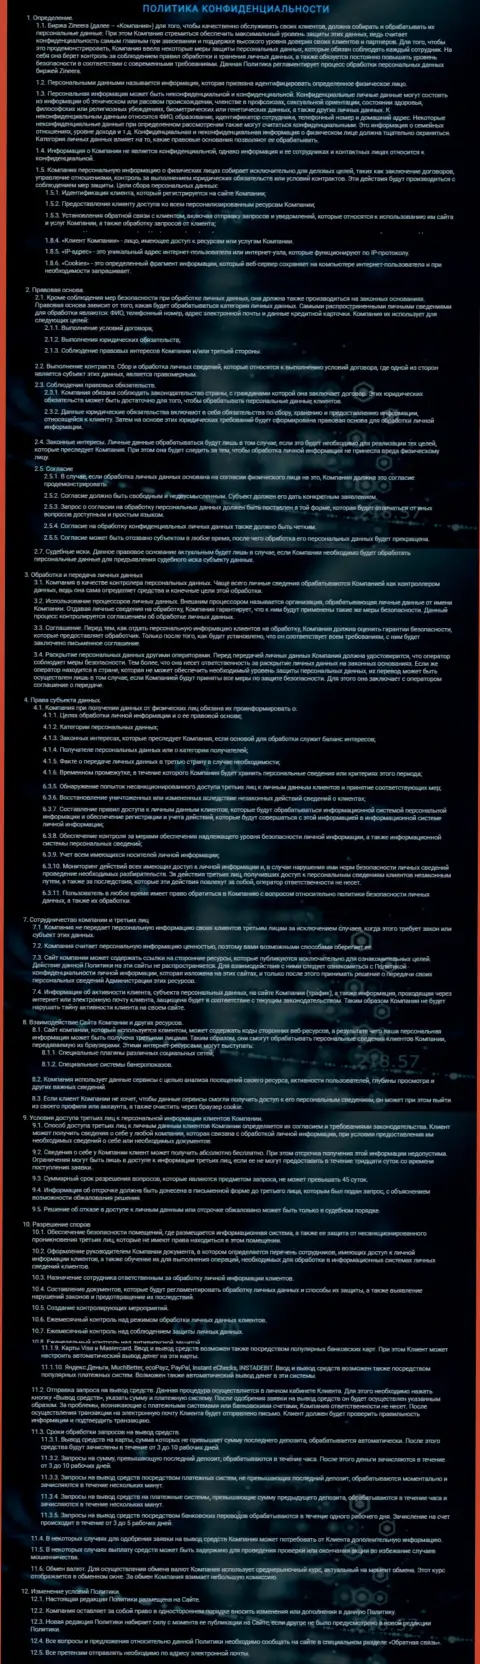 Политика конфиденциальности брокерской компании Зинейра Ком, представленная на официальном информационном ресурсе